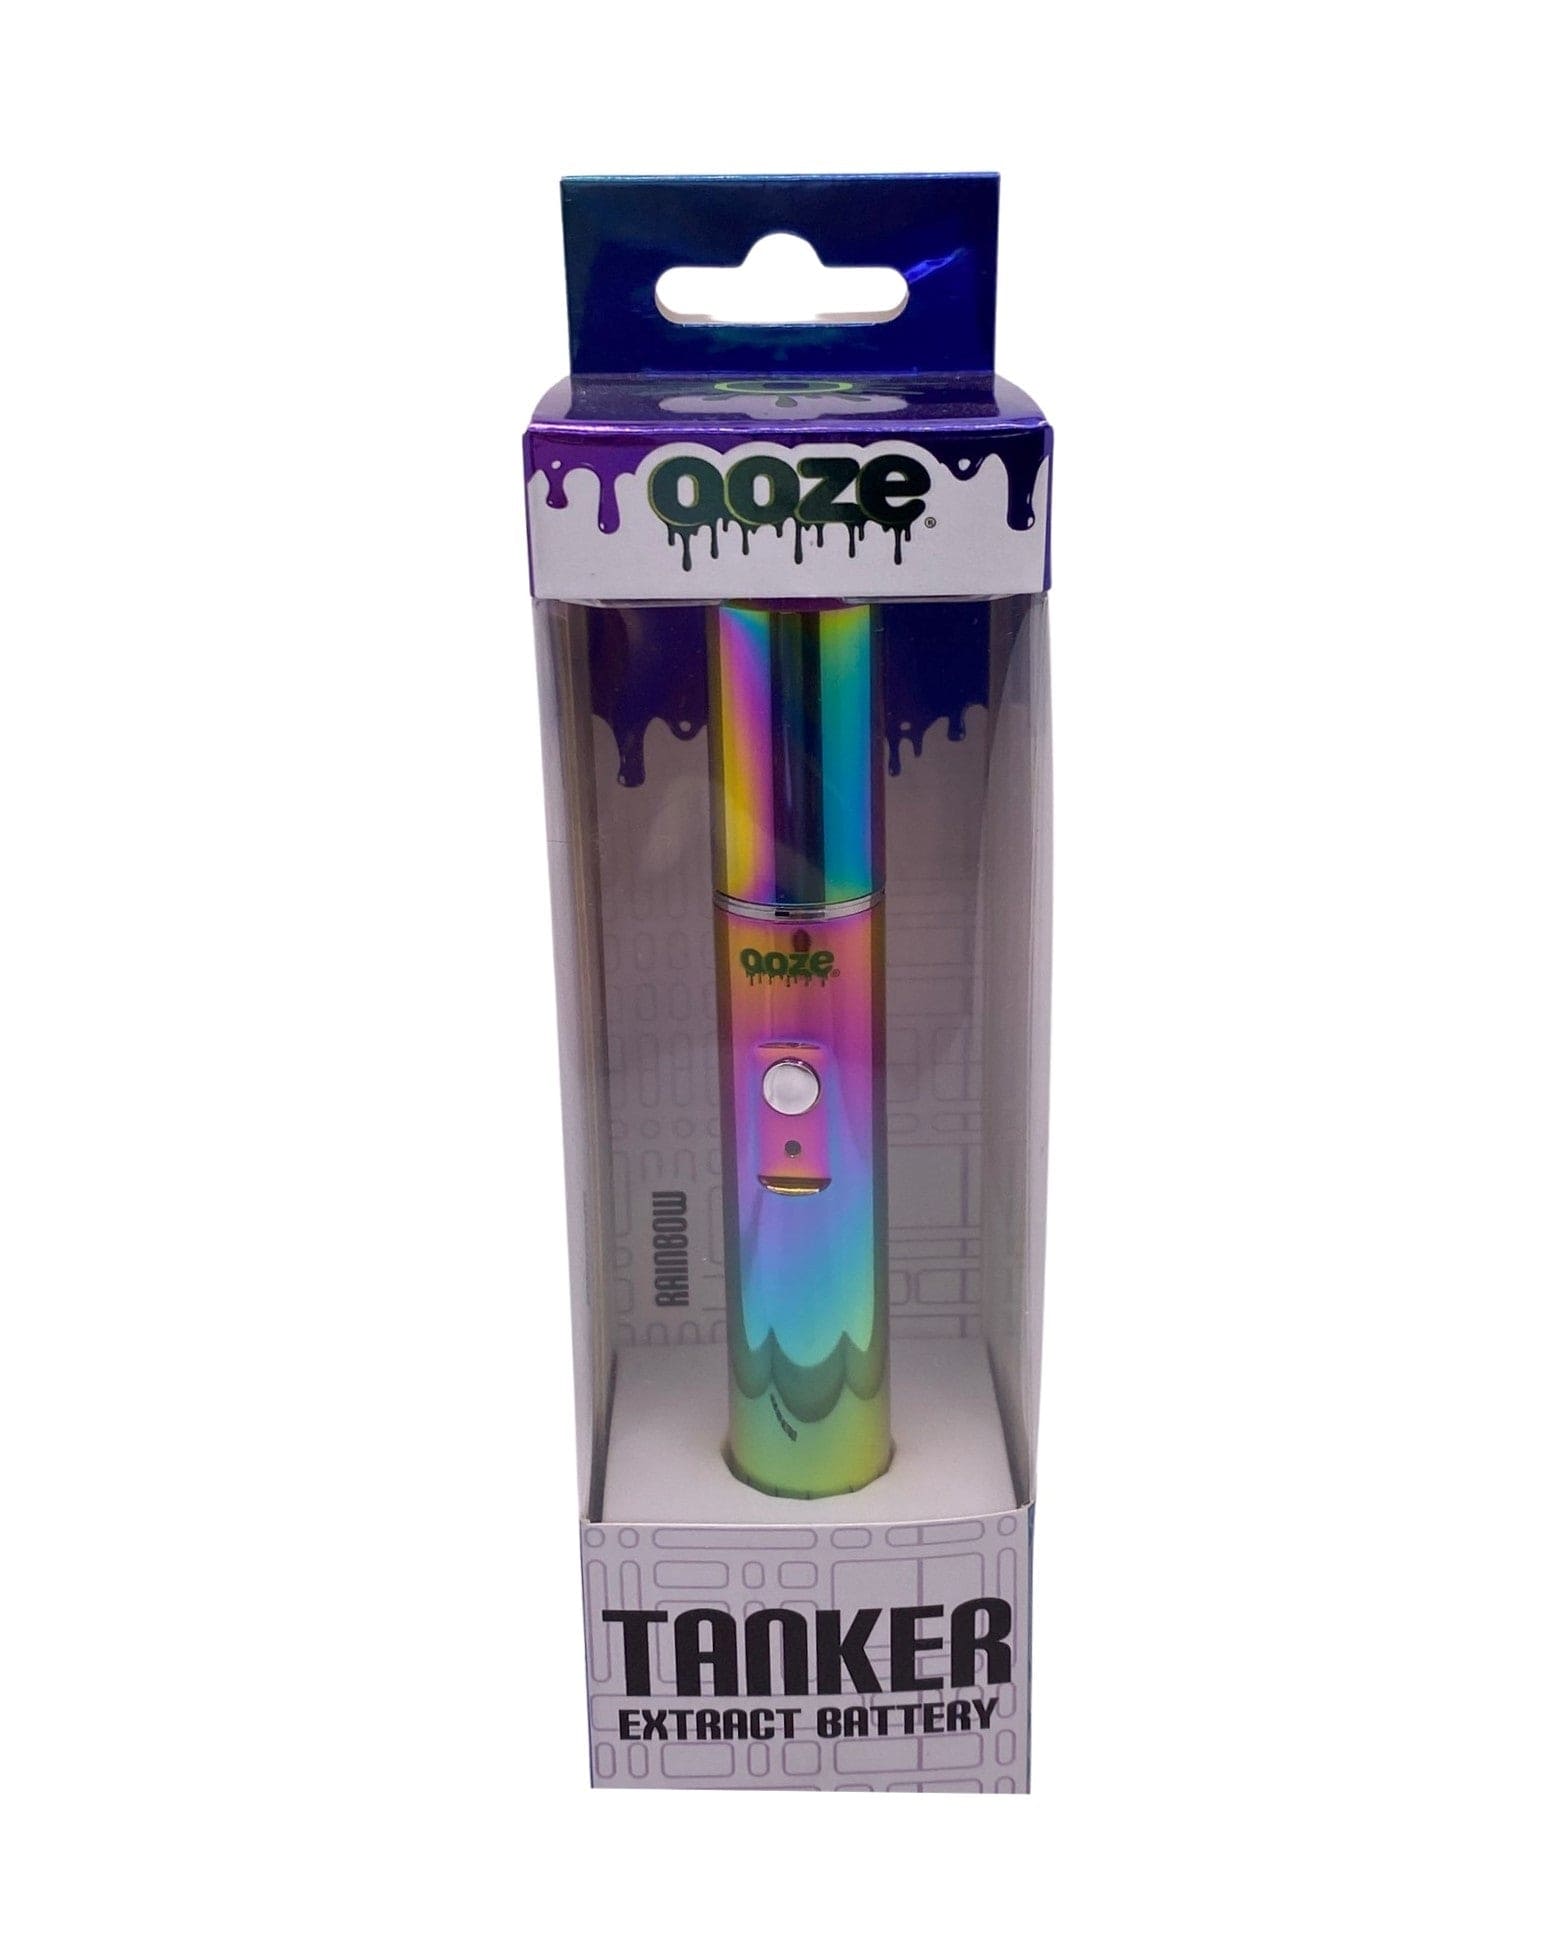 Shop Ooze Slim Twist Pen Vape Battery - Rainbow Online